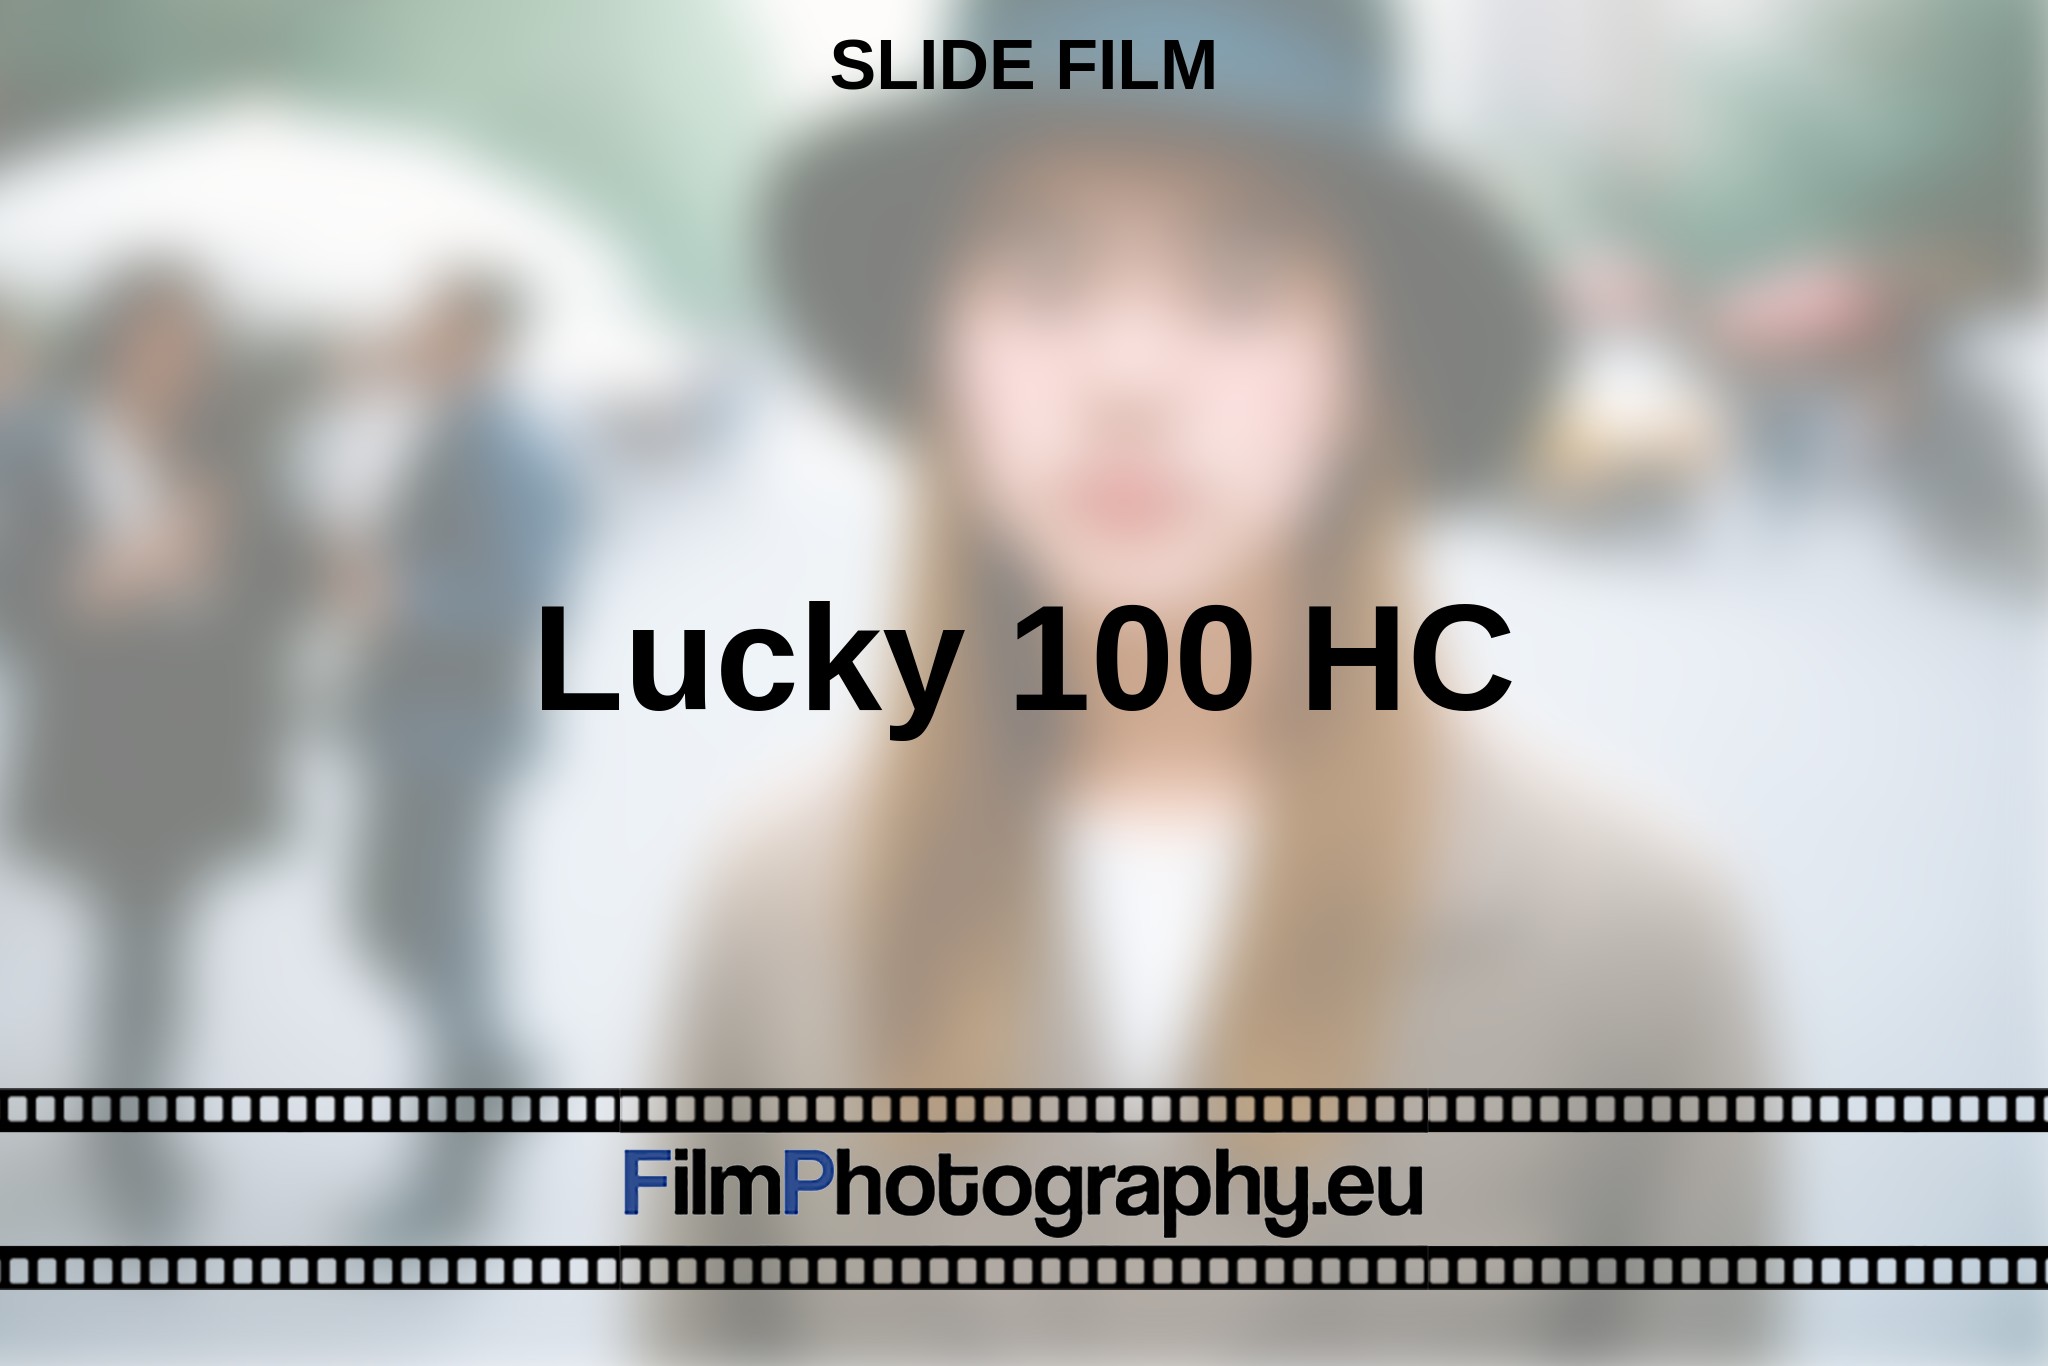 lucky-100-hc-slide-film-en-bnv.jpg